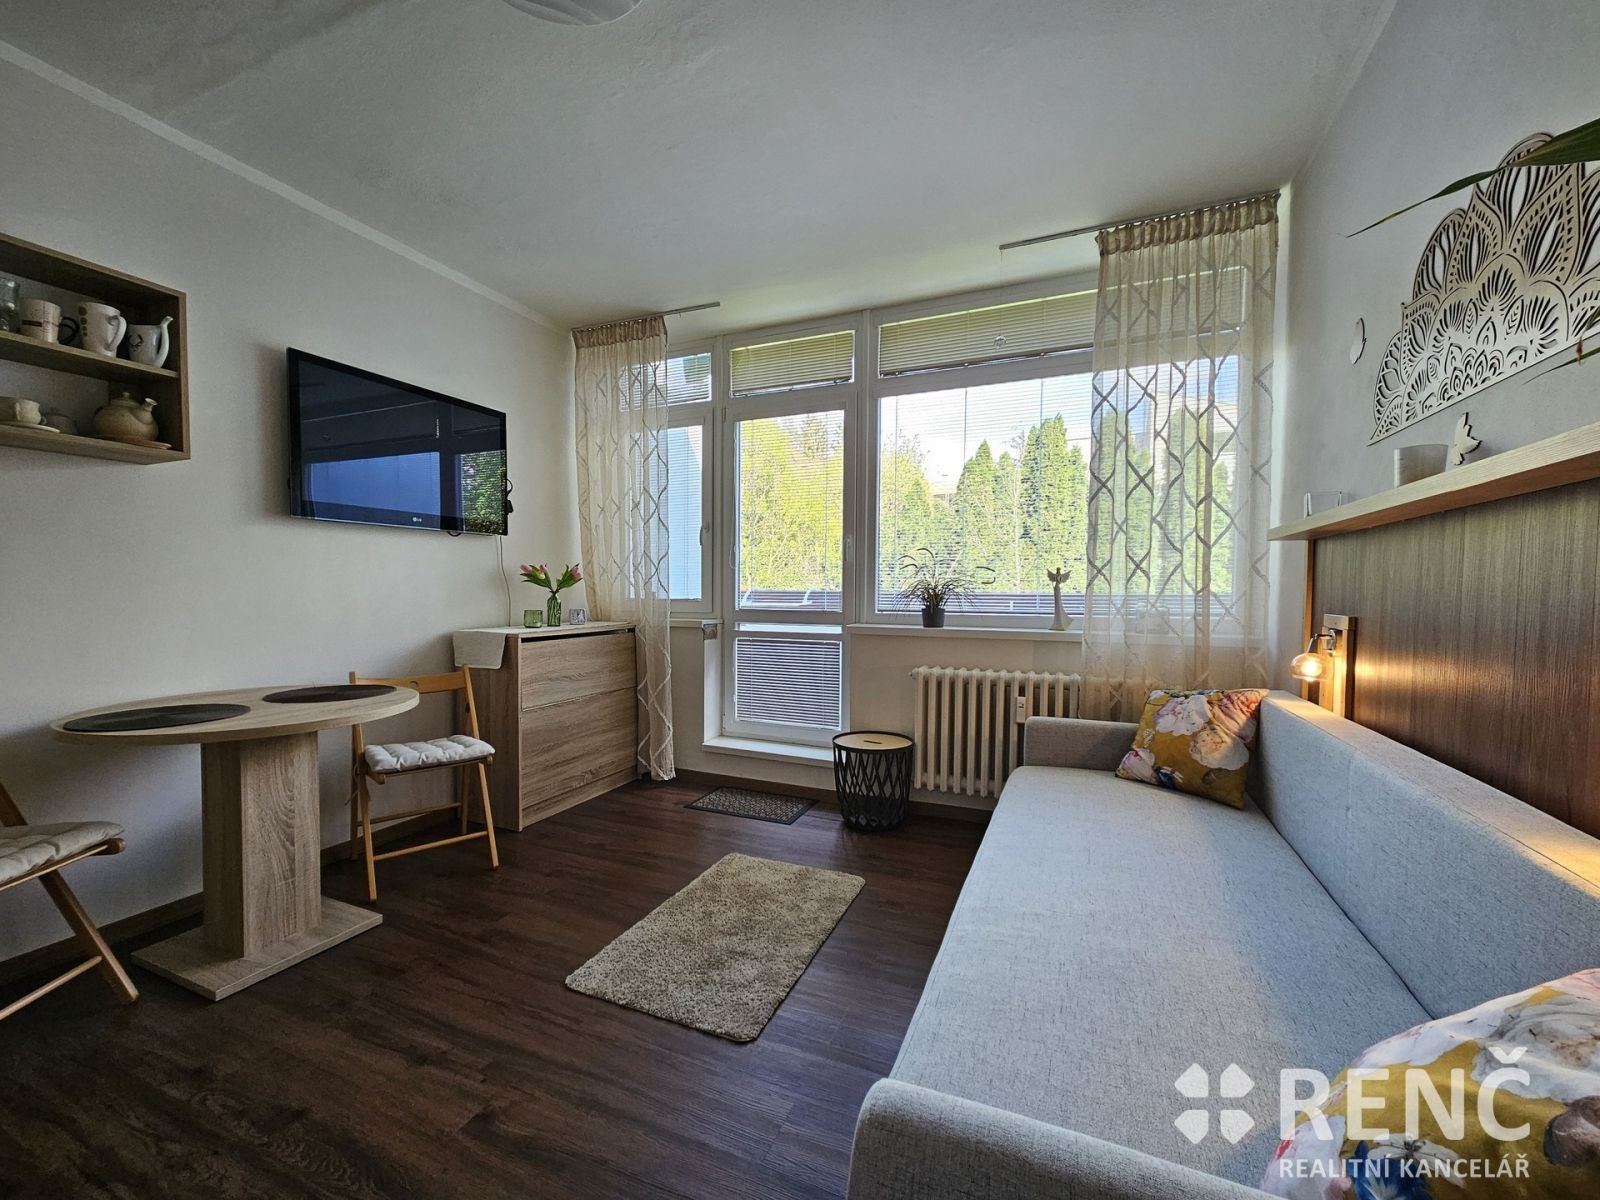 Prodej zrekonstruovaného bytu o velikosti 1+kk na ulici Leoše Janáčka mezi lázeňským parkem a přehra, obrázek č. 1